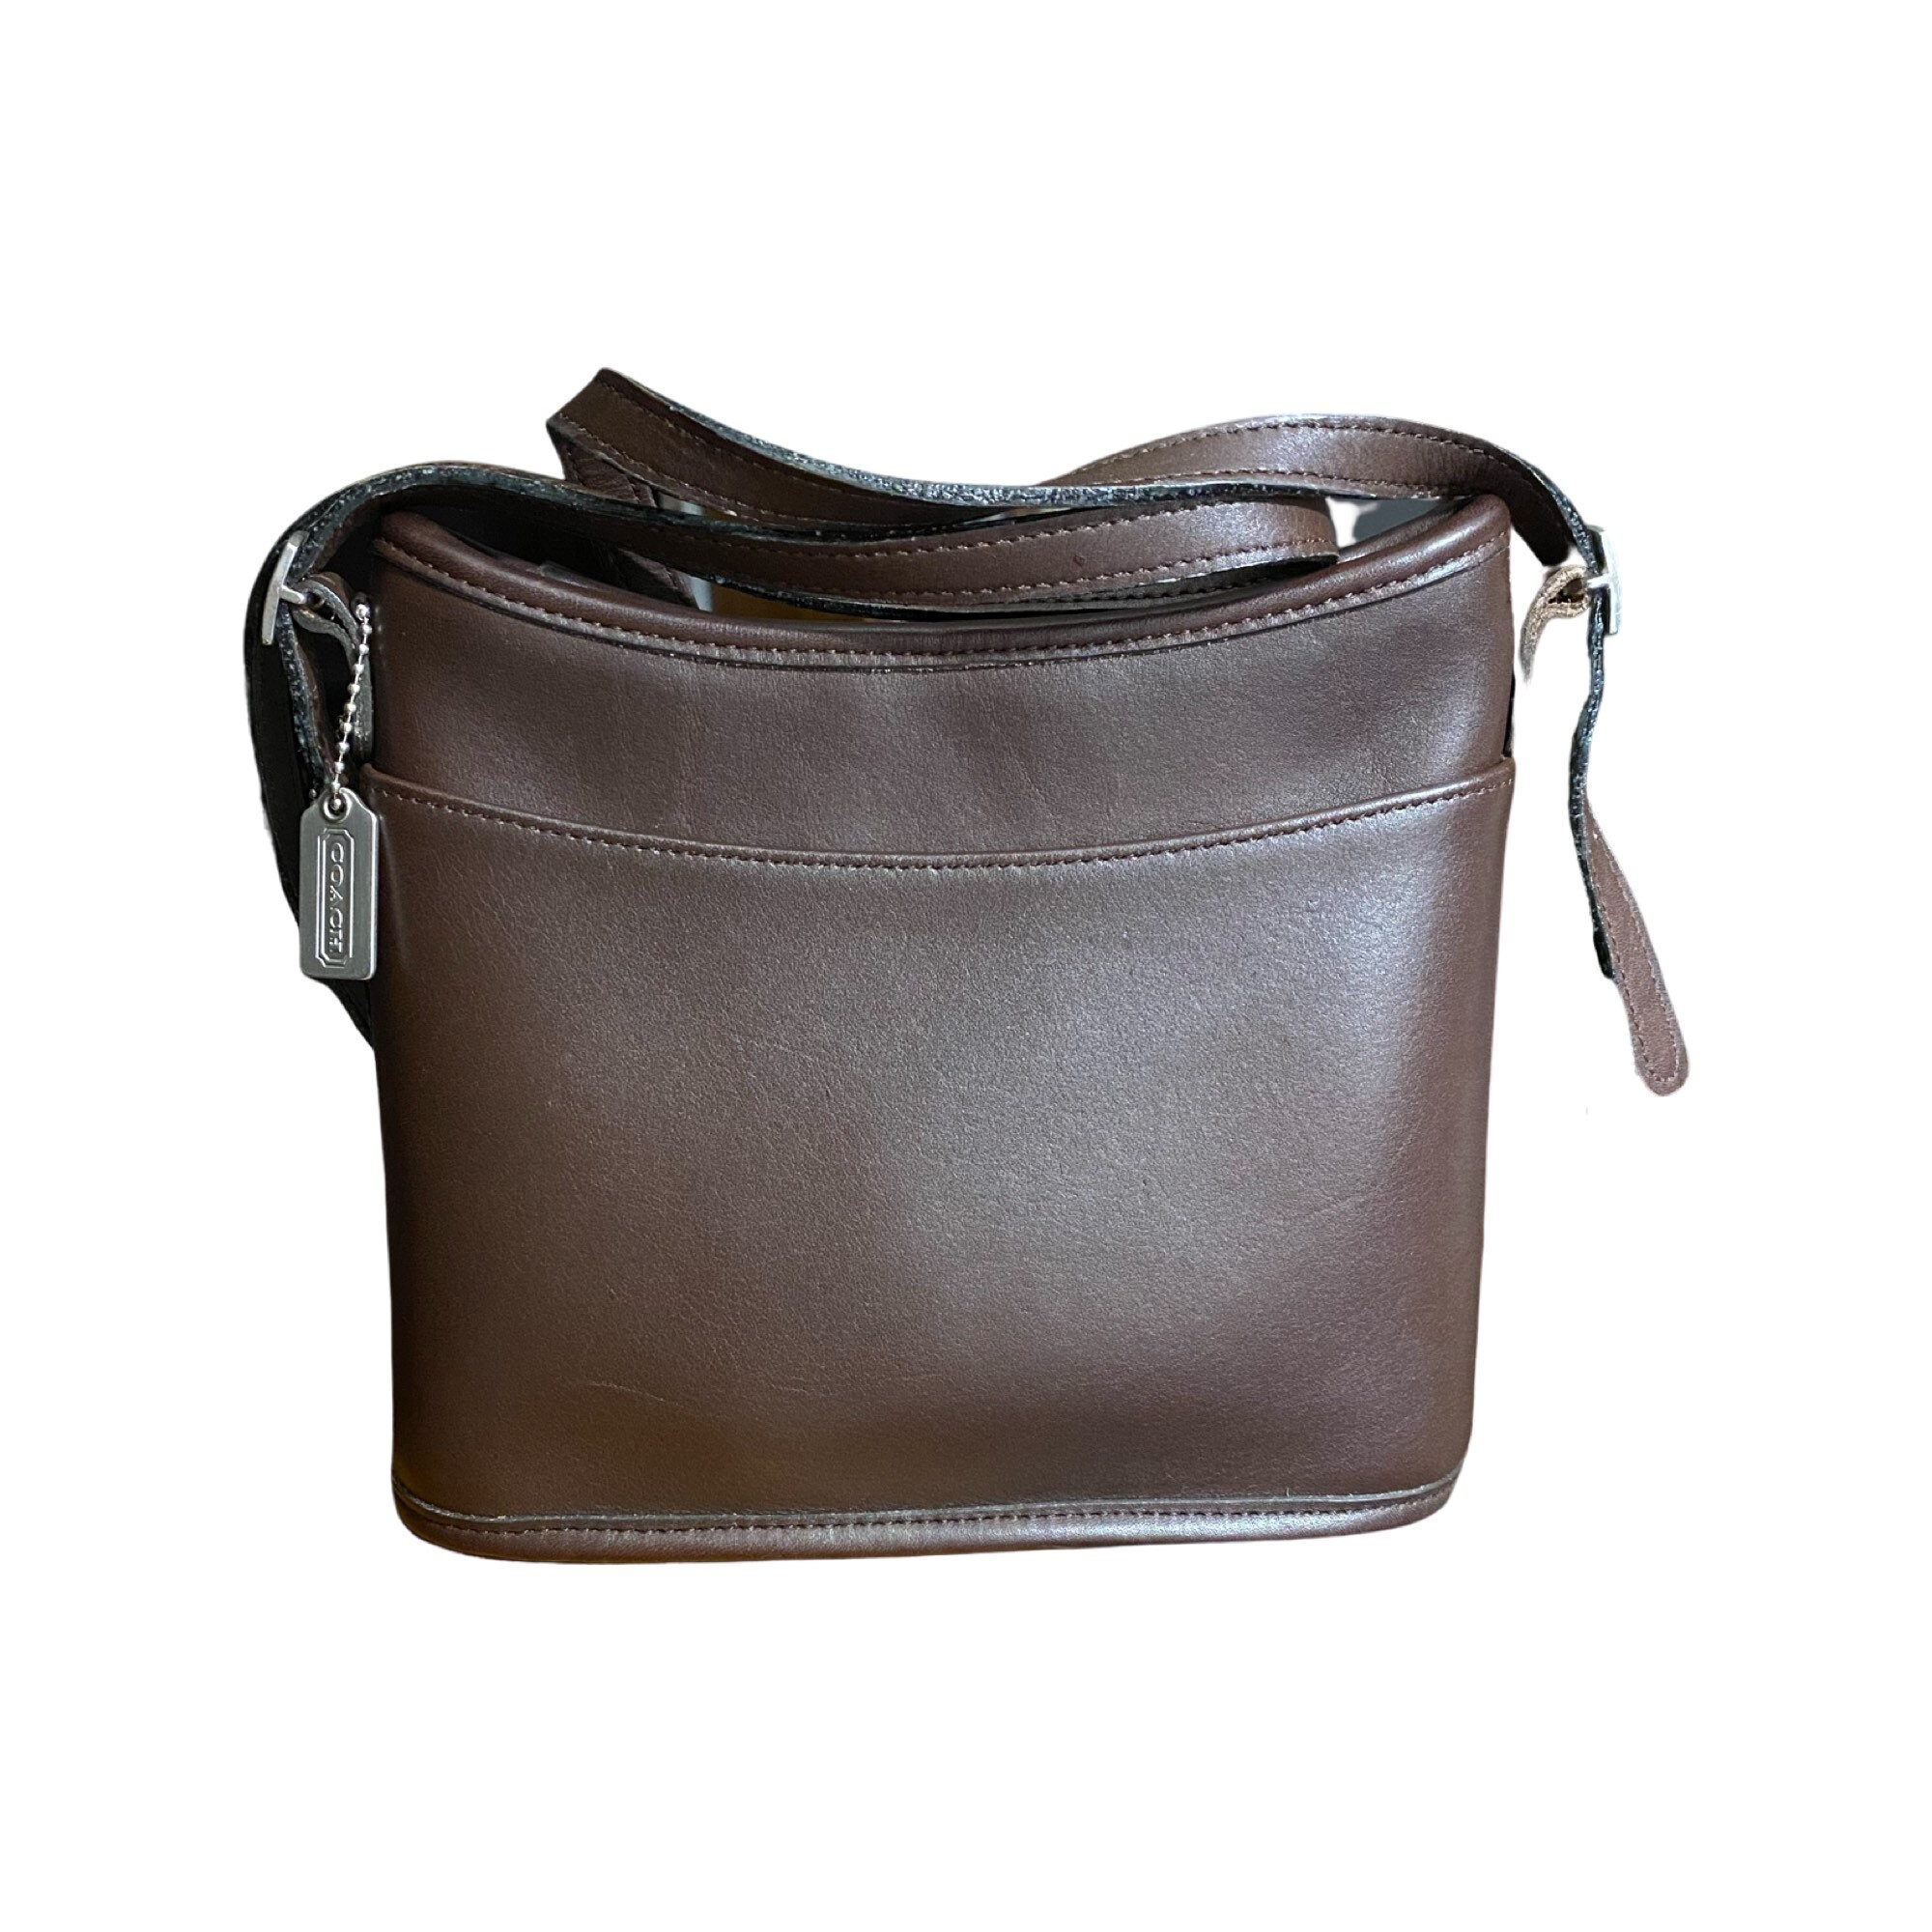 Vintage Coach Tan Buckle Leather & Suede Shoulder Bag Purse 7559